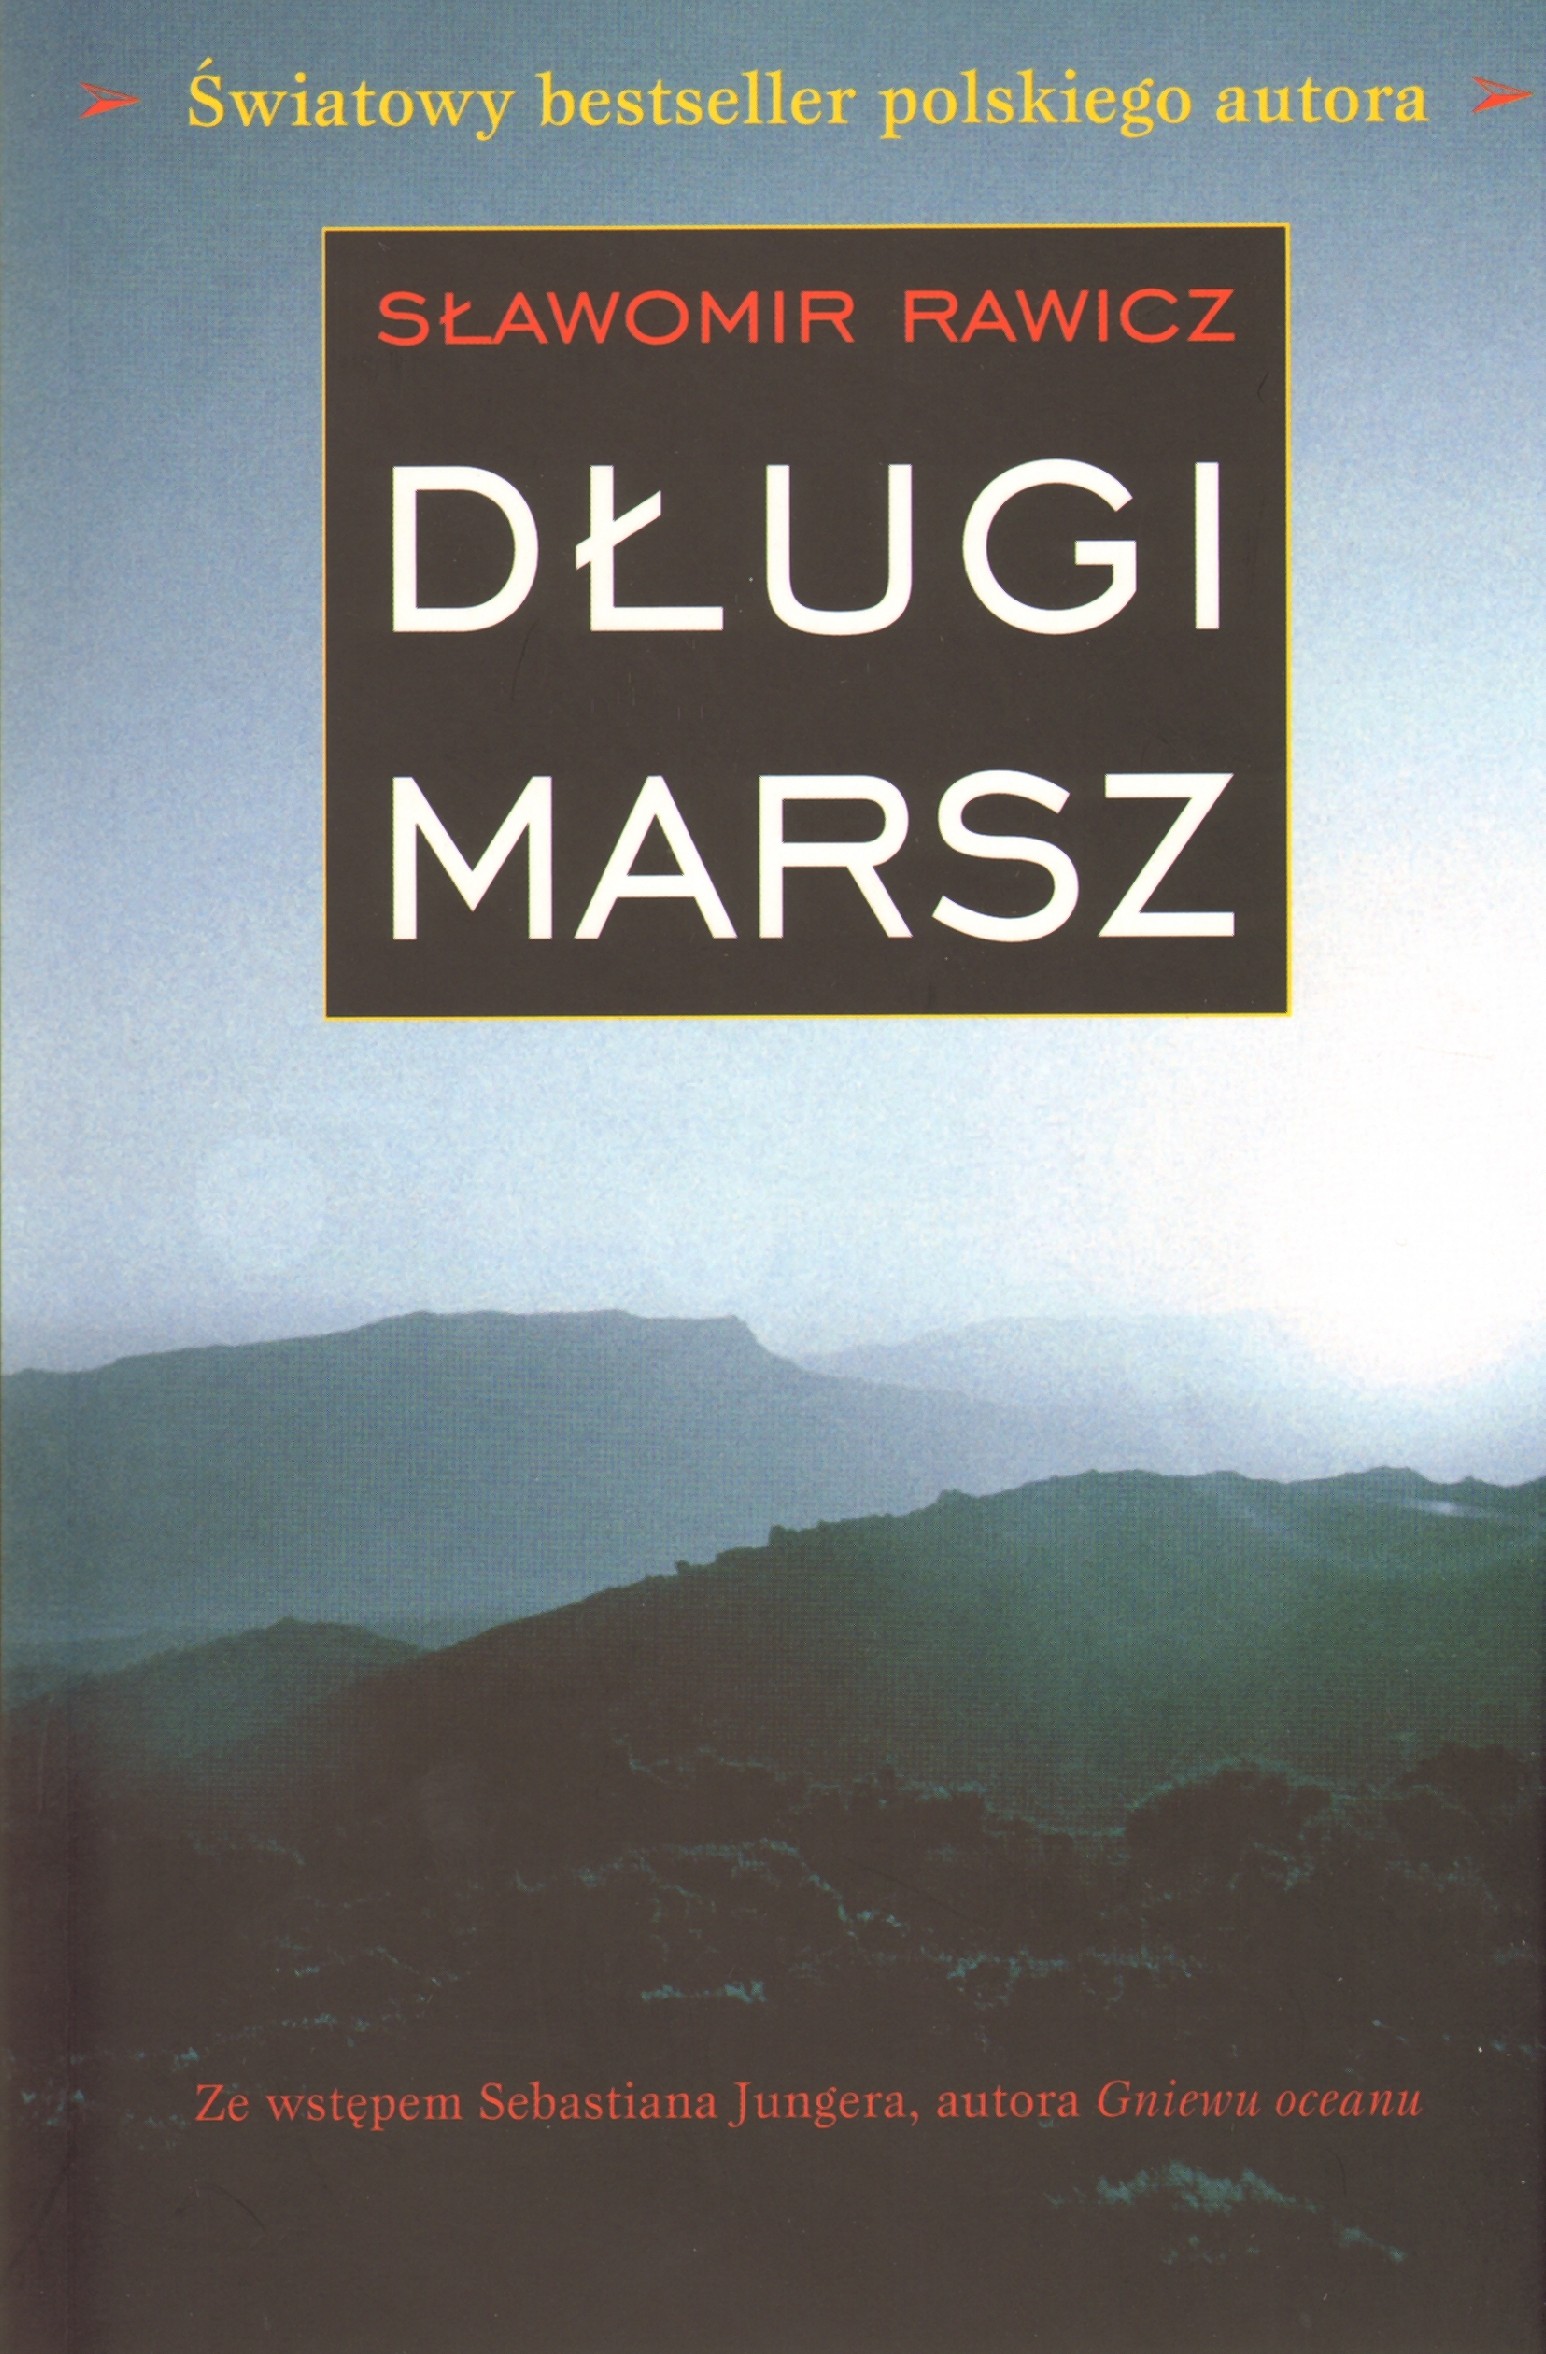 Sławomir Rawicz - Długi marsz - okładka książki - Gord, 2009 rok.jpg